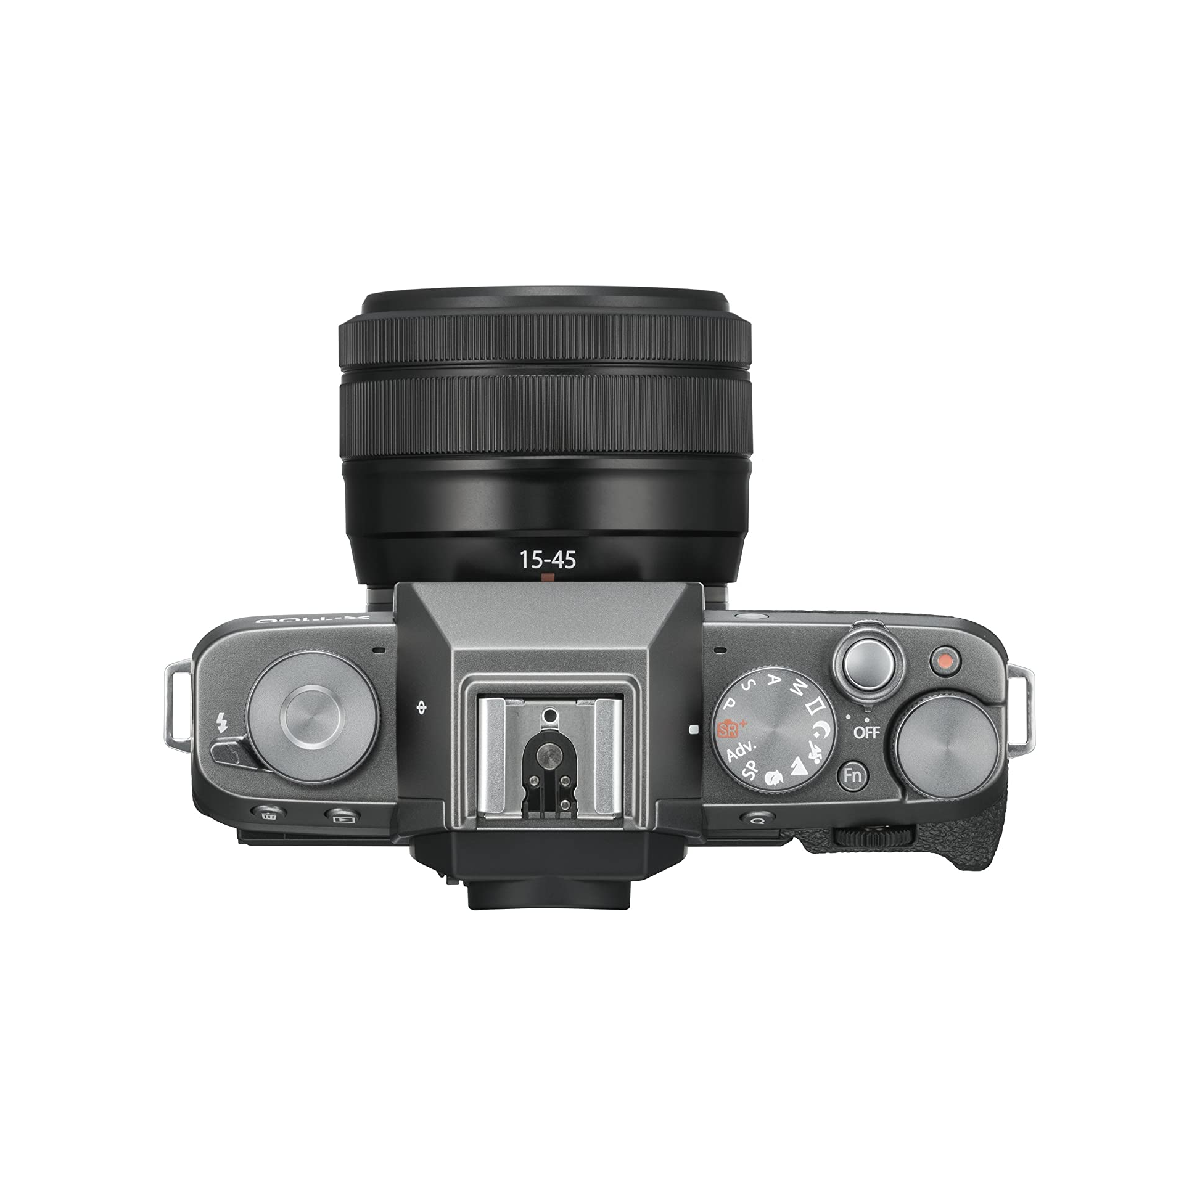 फुजीफिल्म एक्स सीरीज एक्स-टी100 मिररलेस 24.2एमपी डिजिटल एसएलआर कैमरा